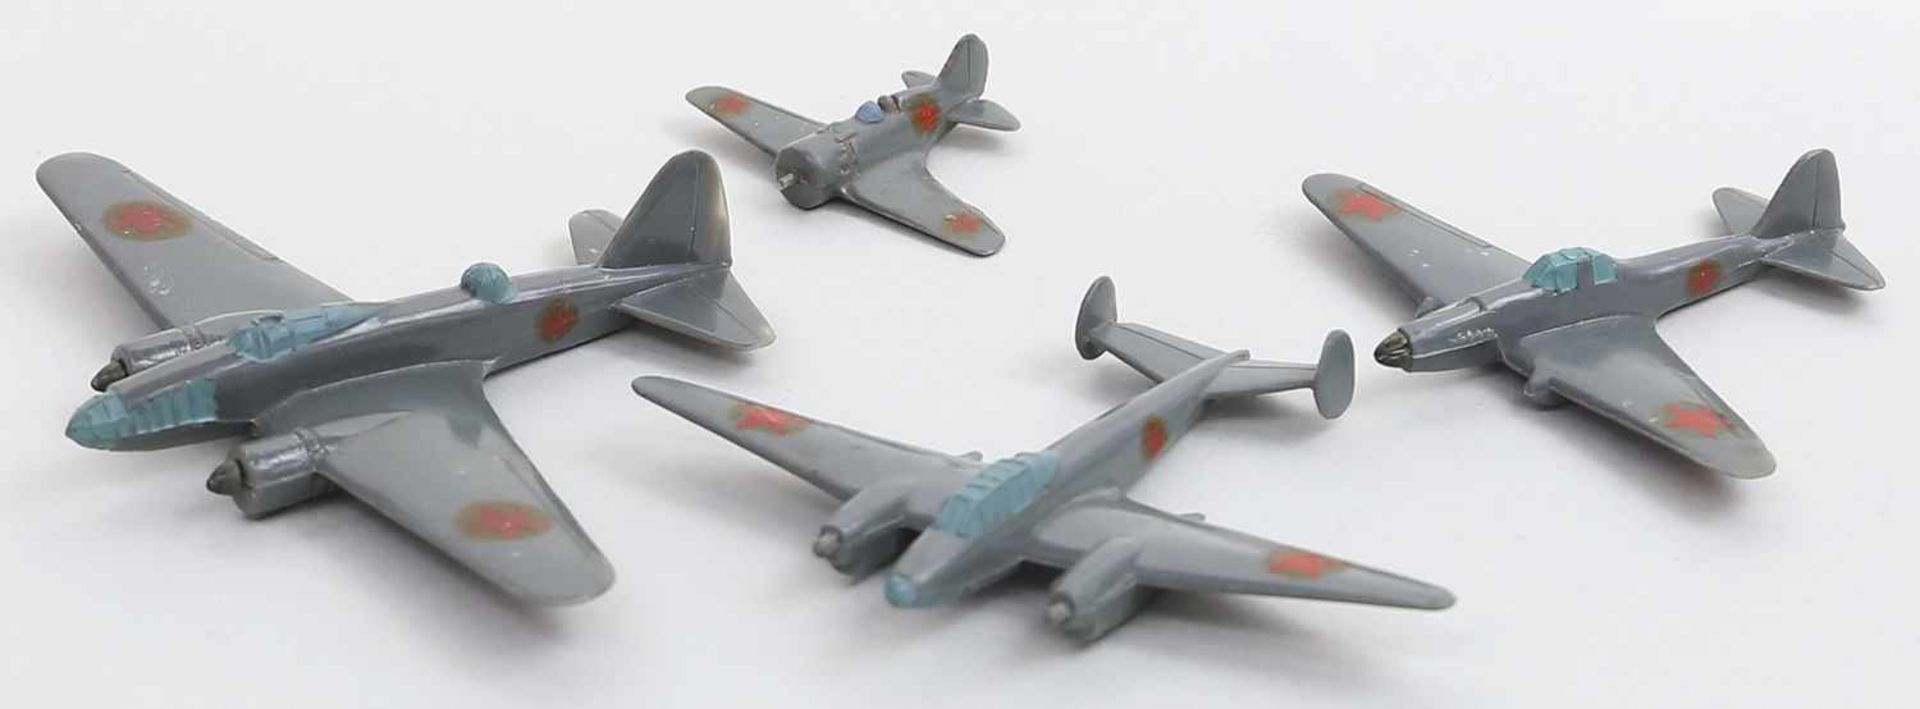 4 Flugzeuge, Wiking.Nr. R4/R5/R2 und R6. Unvollständig. 1940er Jahre.